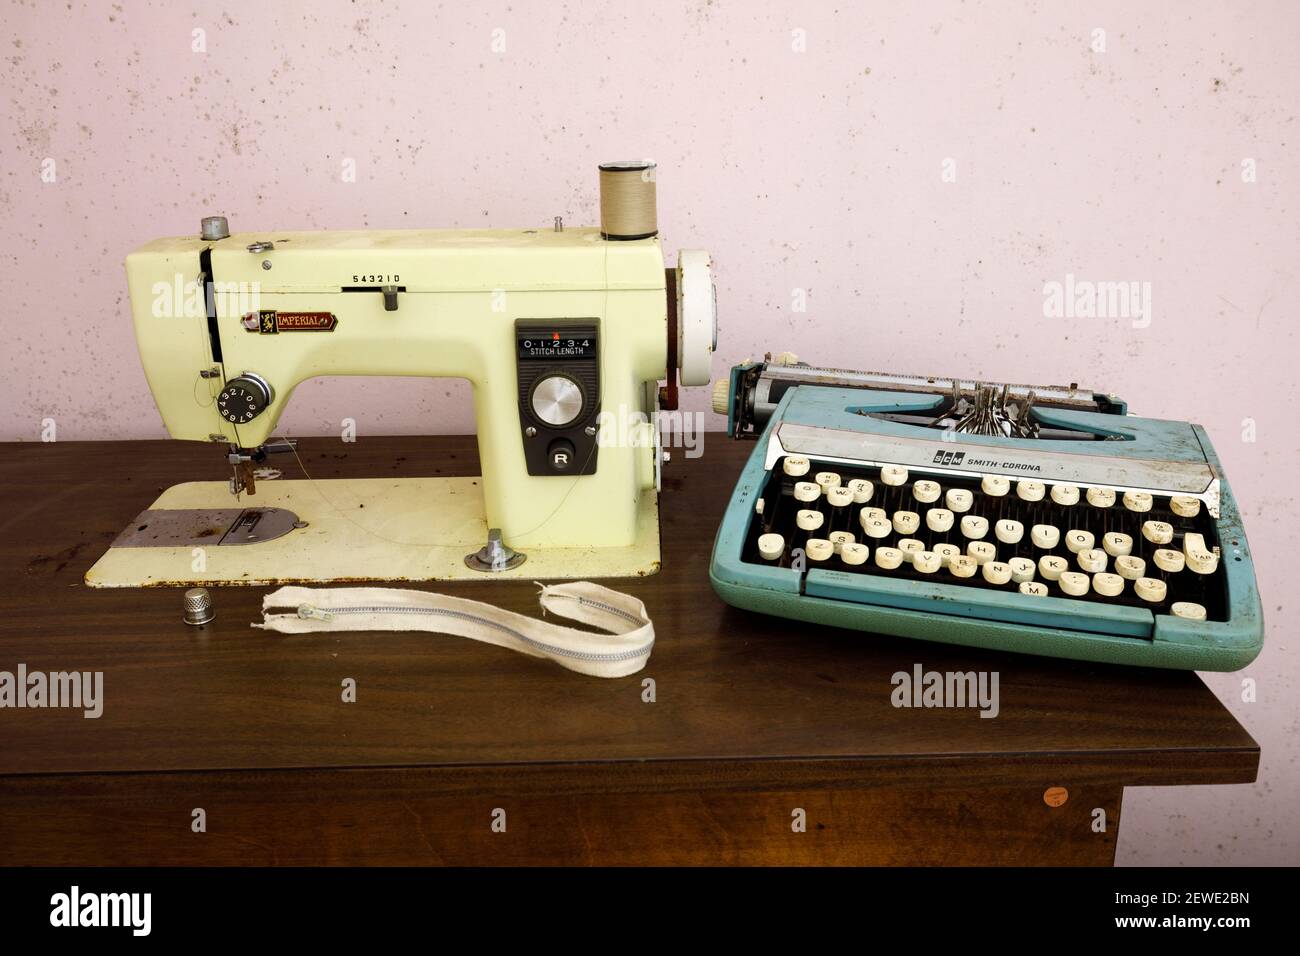 Une machine à coudre Imperial modèle 535 et une machine à écrire Smith Corona SCM Deluxe de Corsair. Banque D'Images